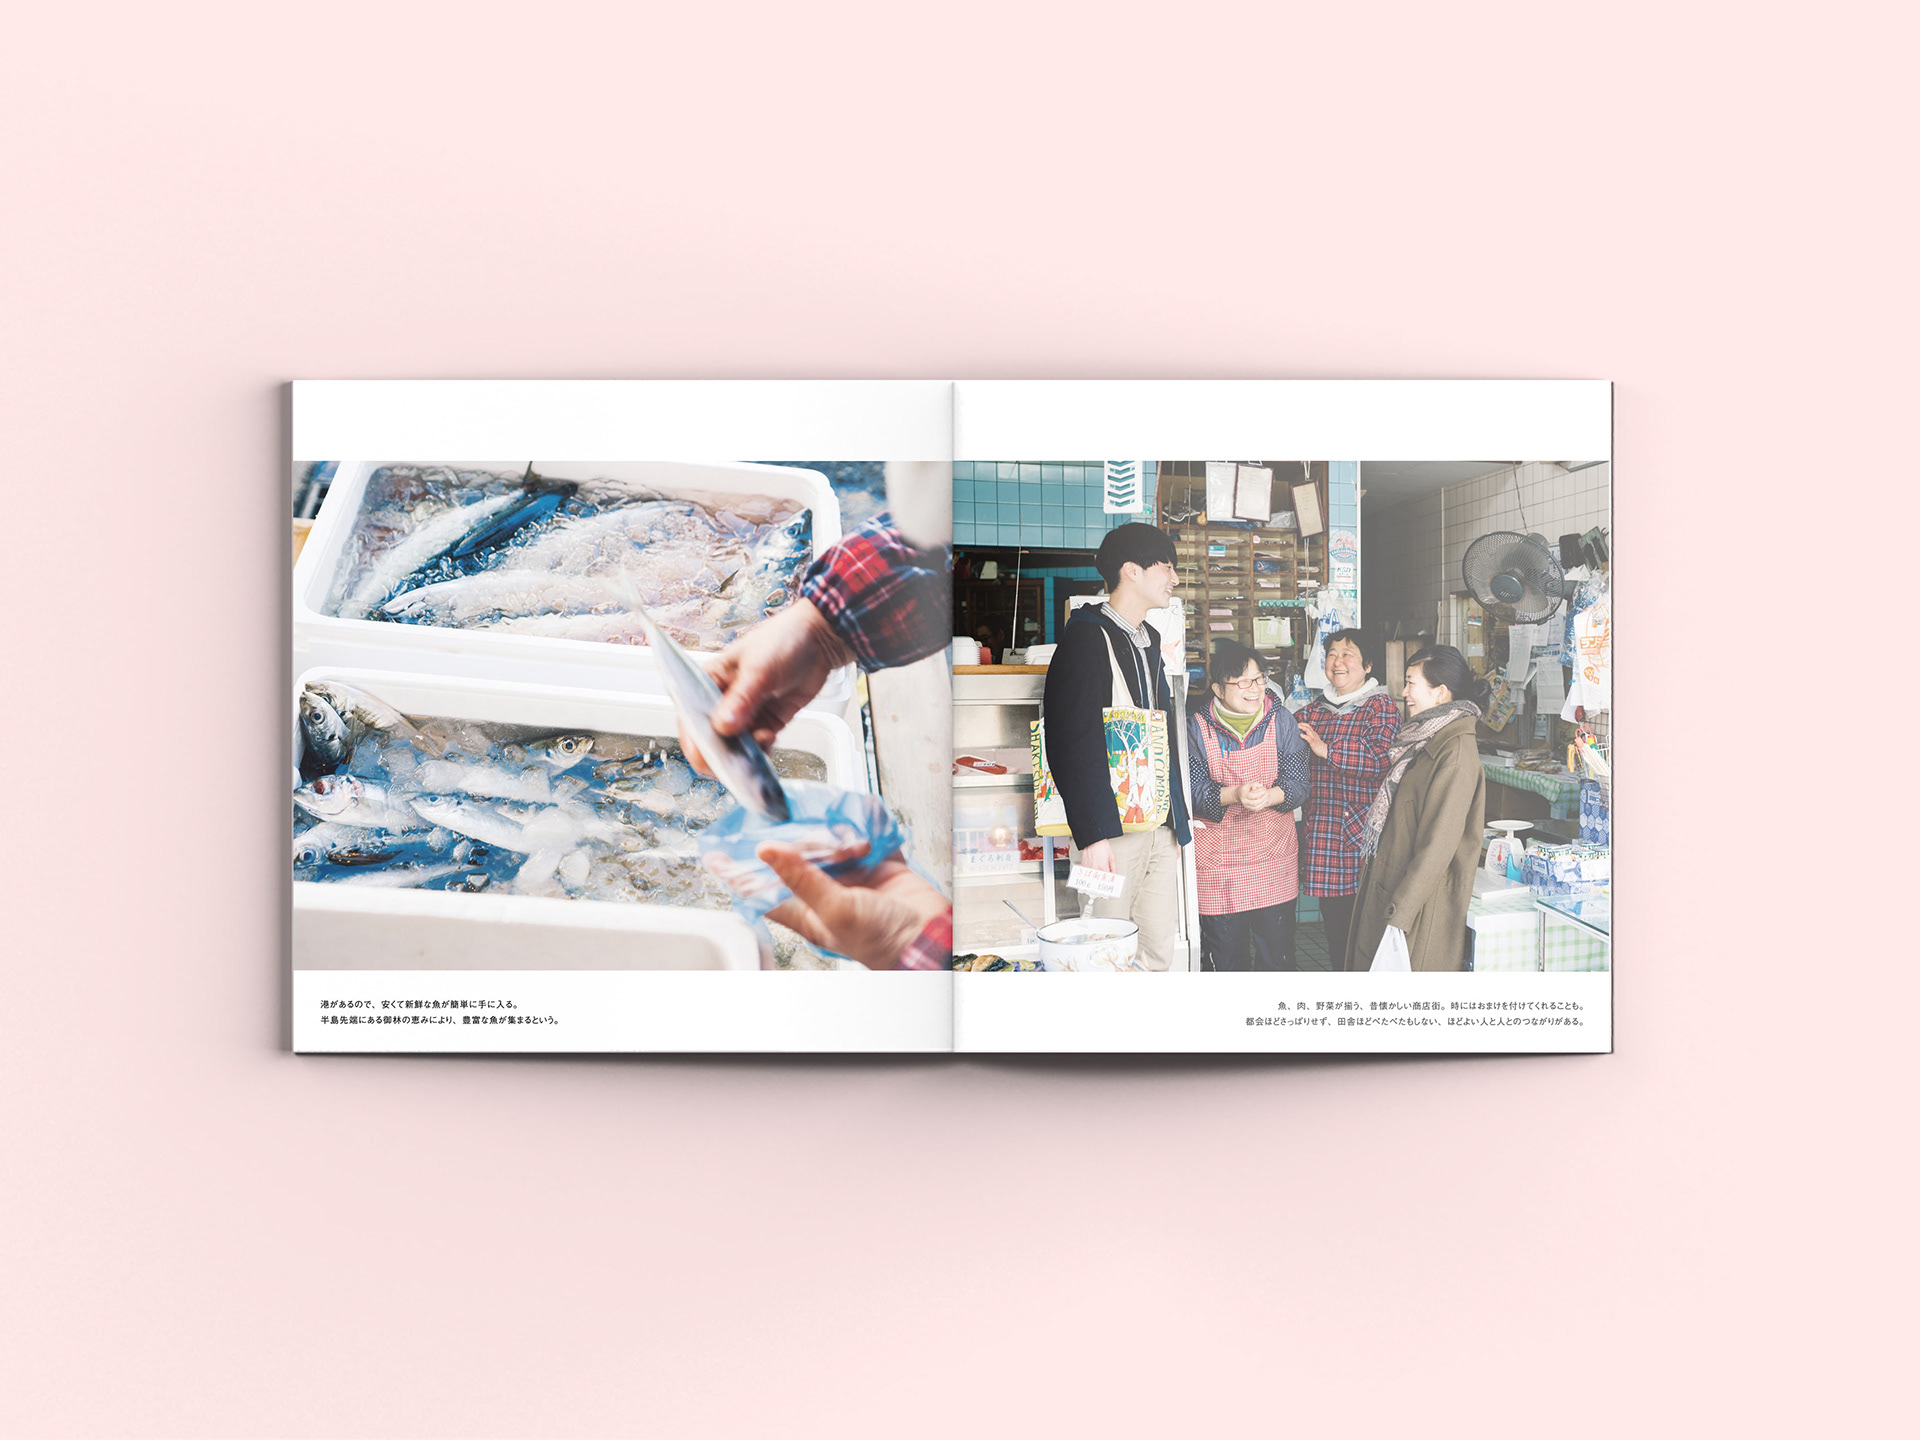 Takada Chika Potoreto Design 小さな町で 仕事をつくる冊子デザインと表紙イラストレーション